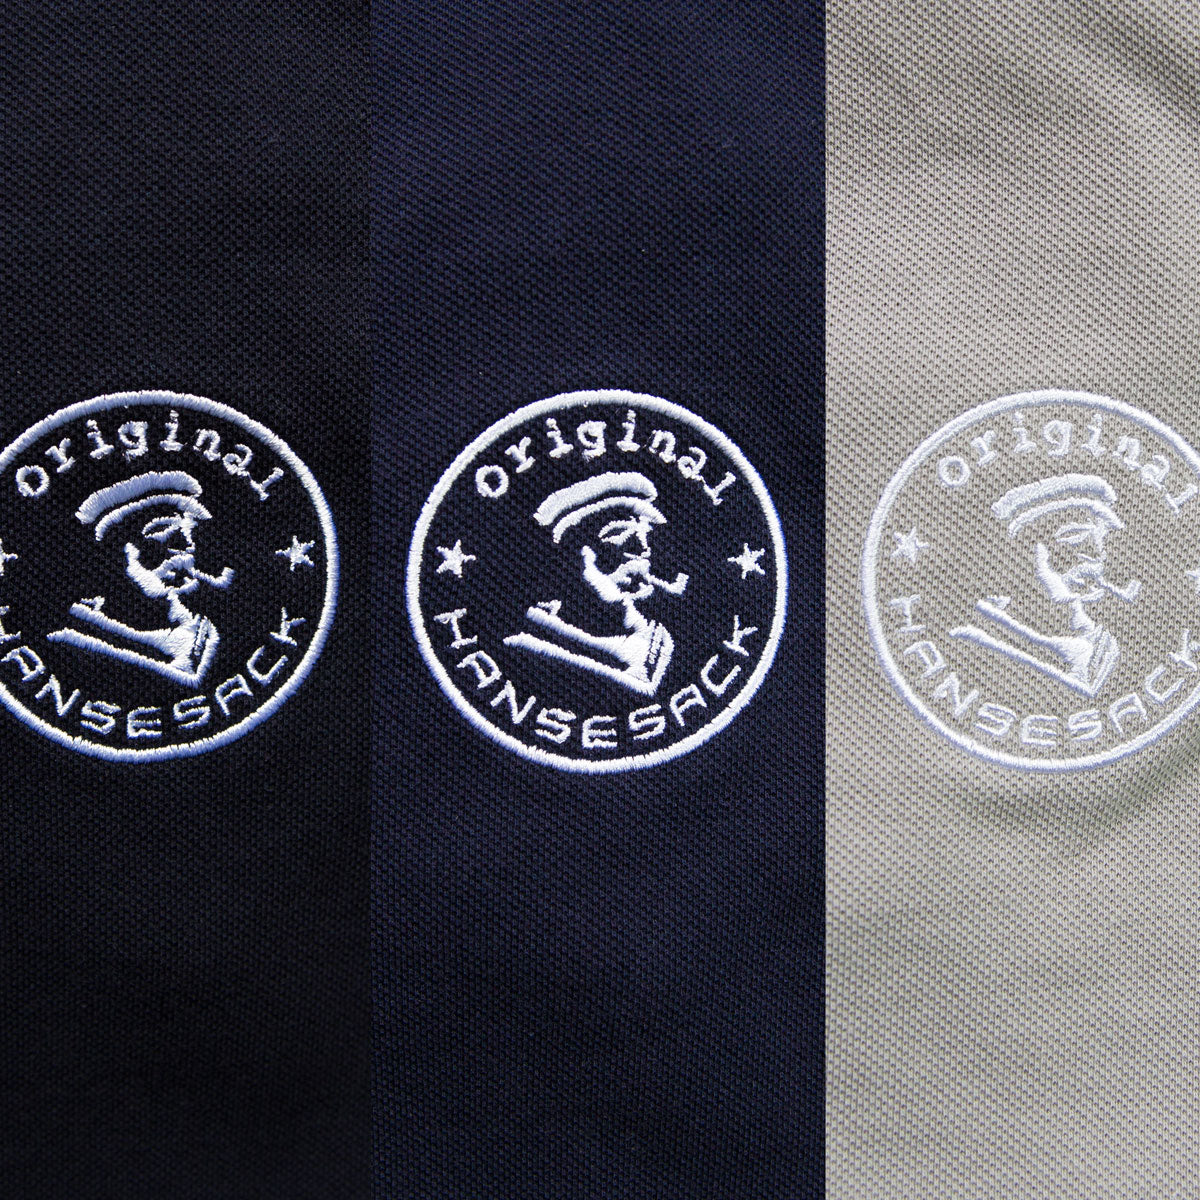 Hansesack Produktbild Farbvergleich Polo-Shirts schwarz, marine, grau mit weißem Original Hansesack Stick Nahaufnahme